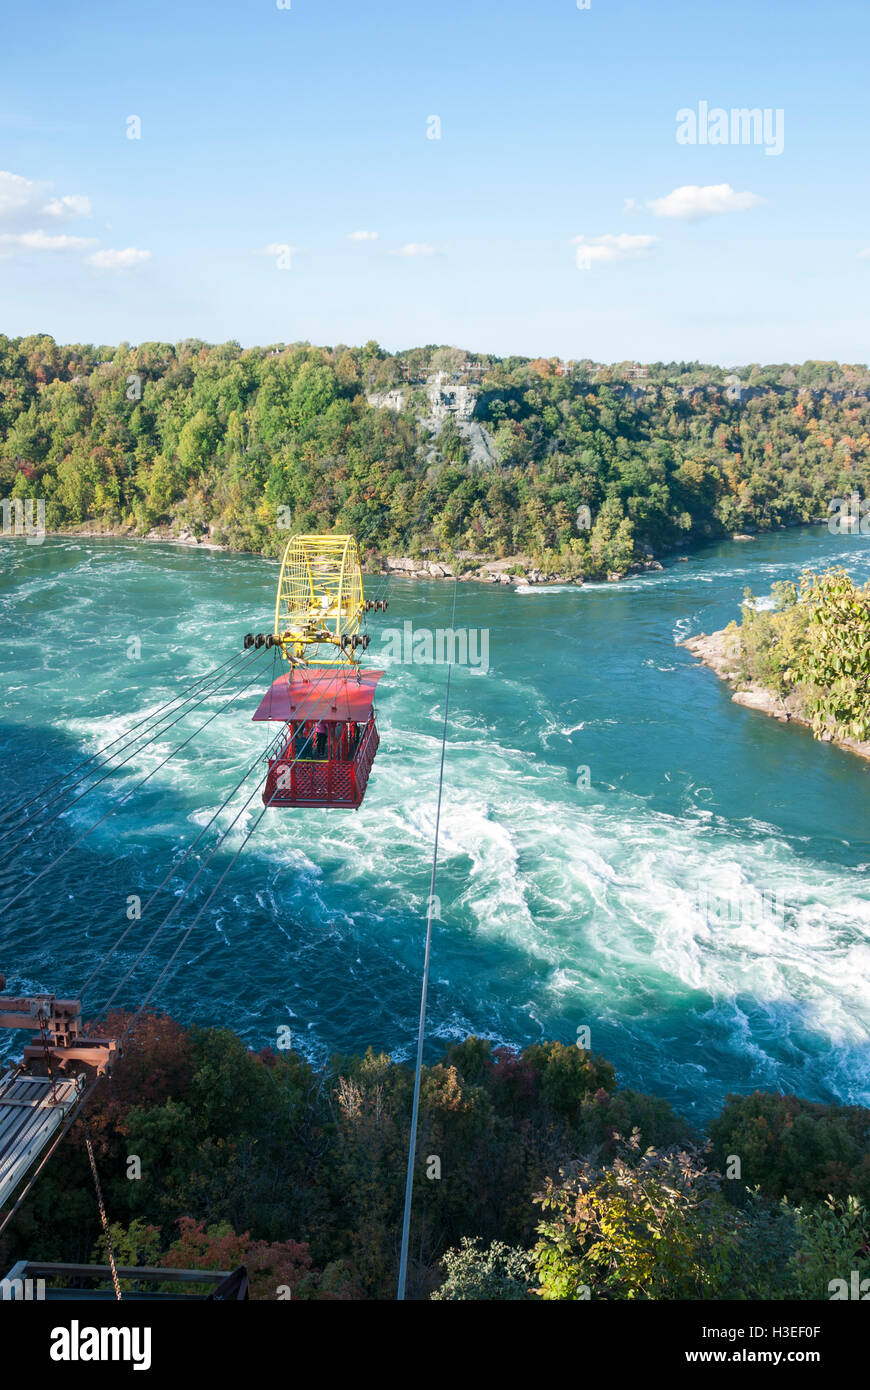 In operation since 1916, the Niagara Aero Car is seen crossing the Niagara river and whirlpool rapids in Niagara Falls Canada Stock Photo